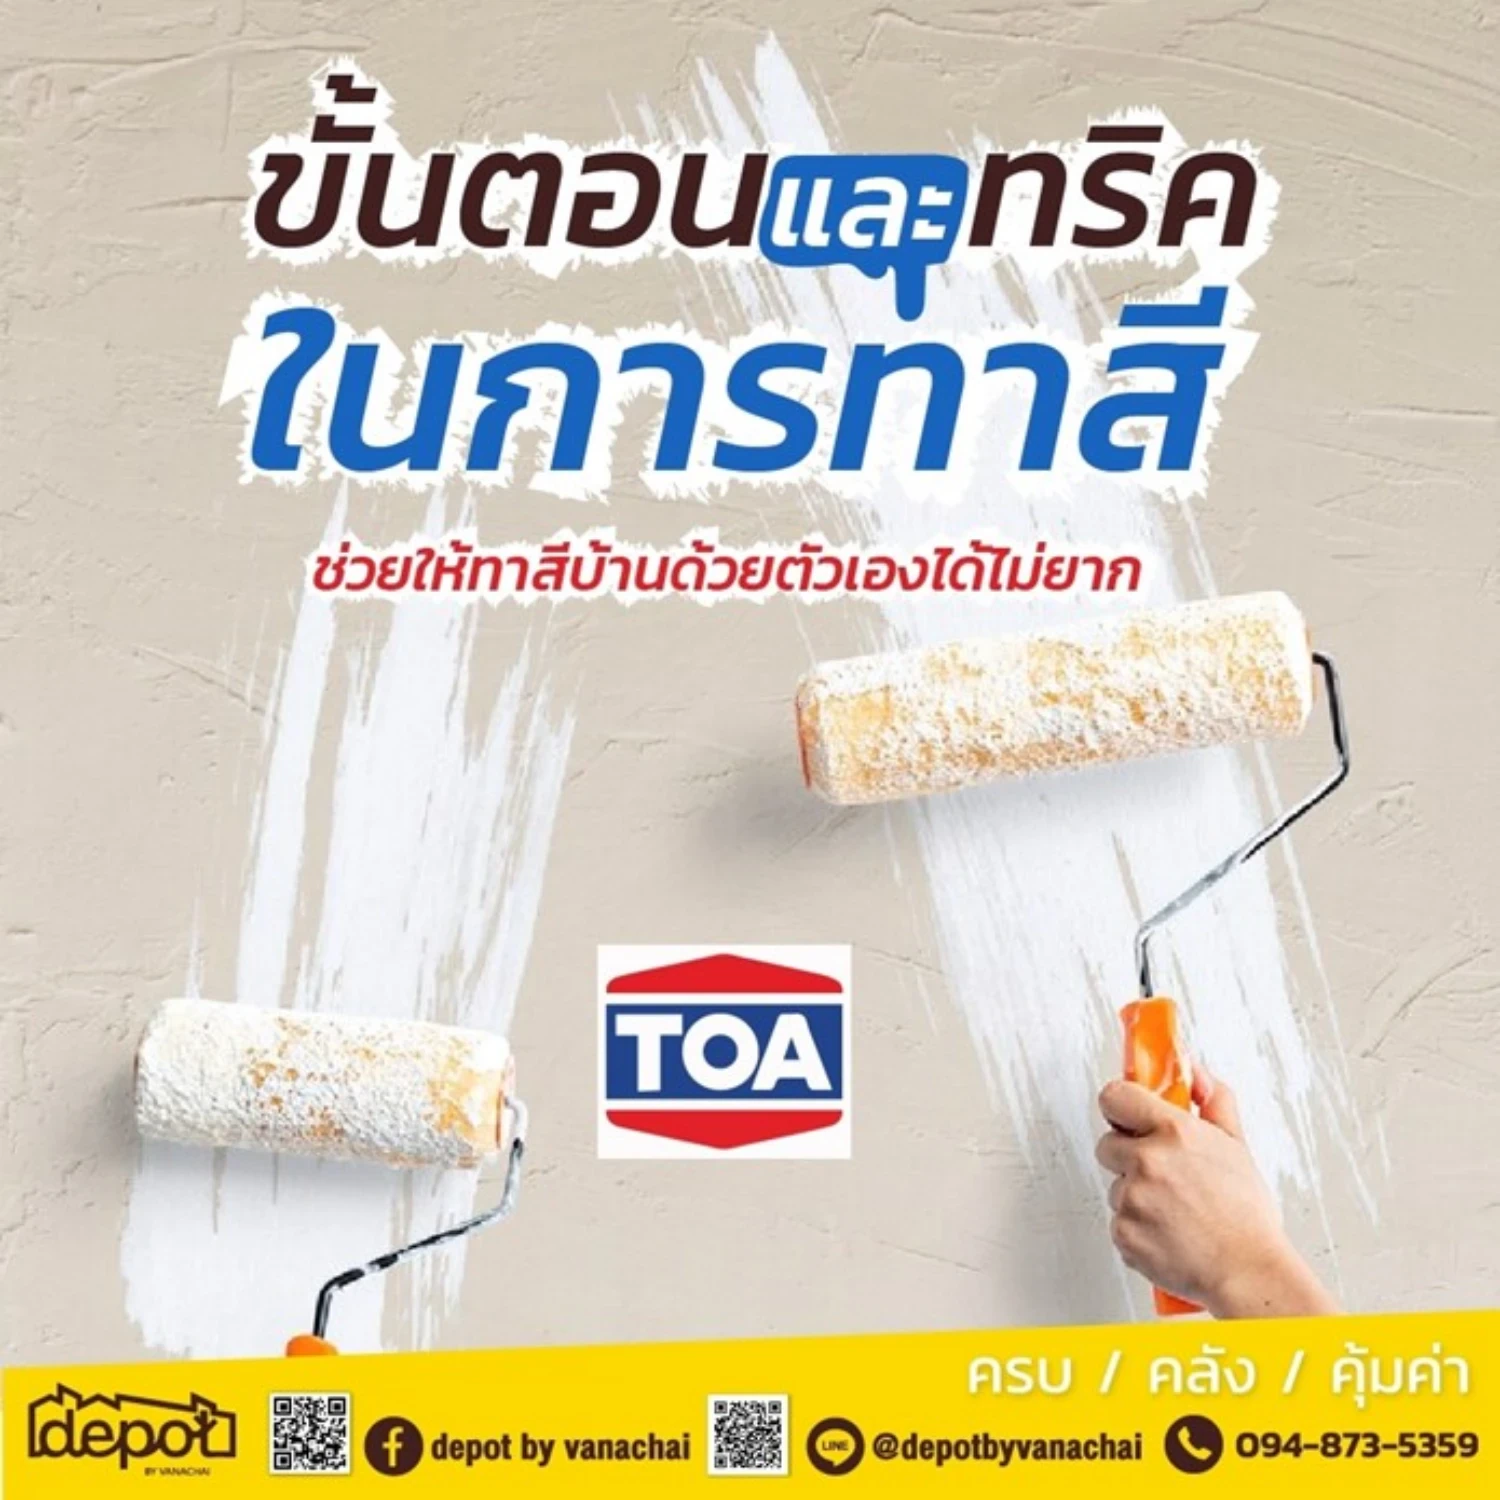 เปิด Tips & Tricks จาก TOA สีทาบ้านอันดับหนึ่งของคนไทย